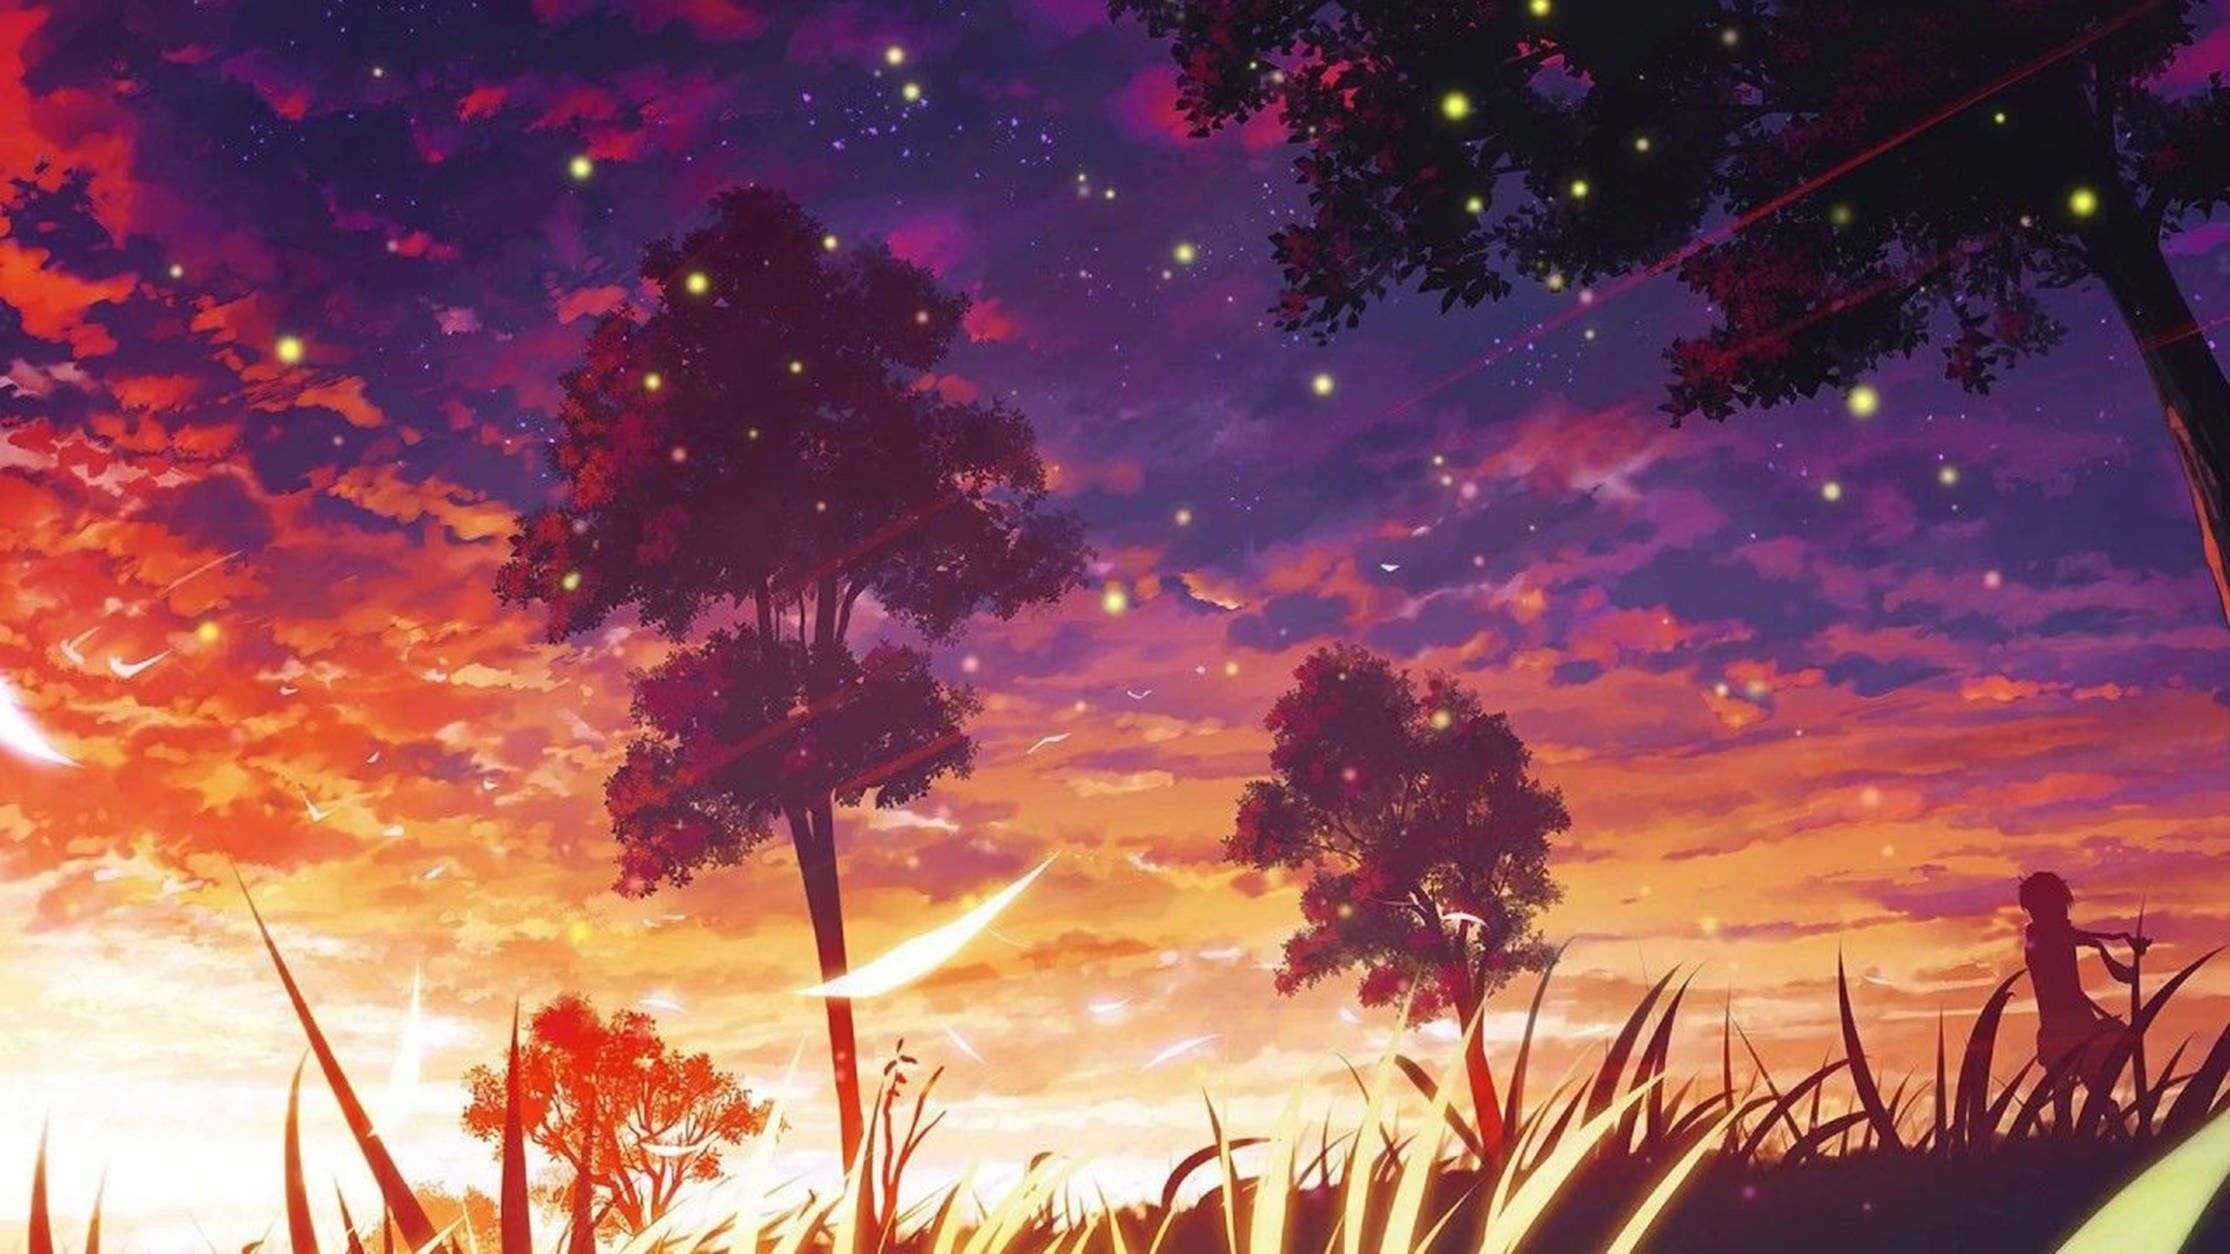 Anime wallpaper, person in the sky - Lo fi